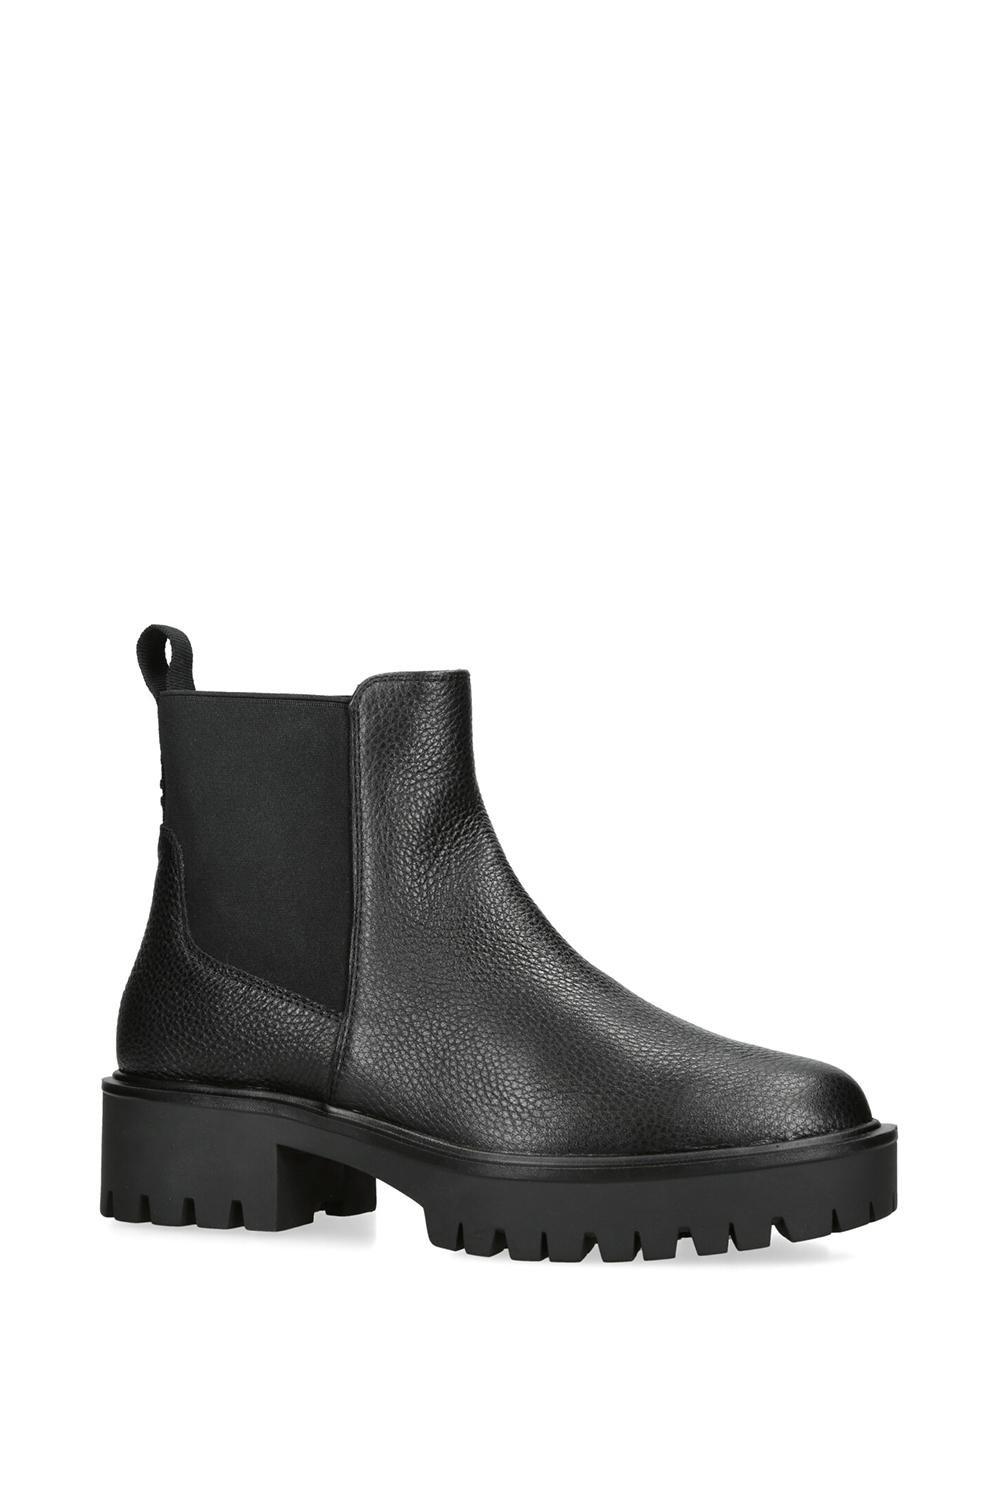 Black Boots I Oasis Fashion UK